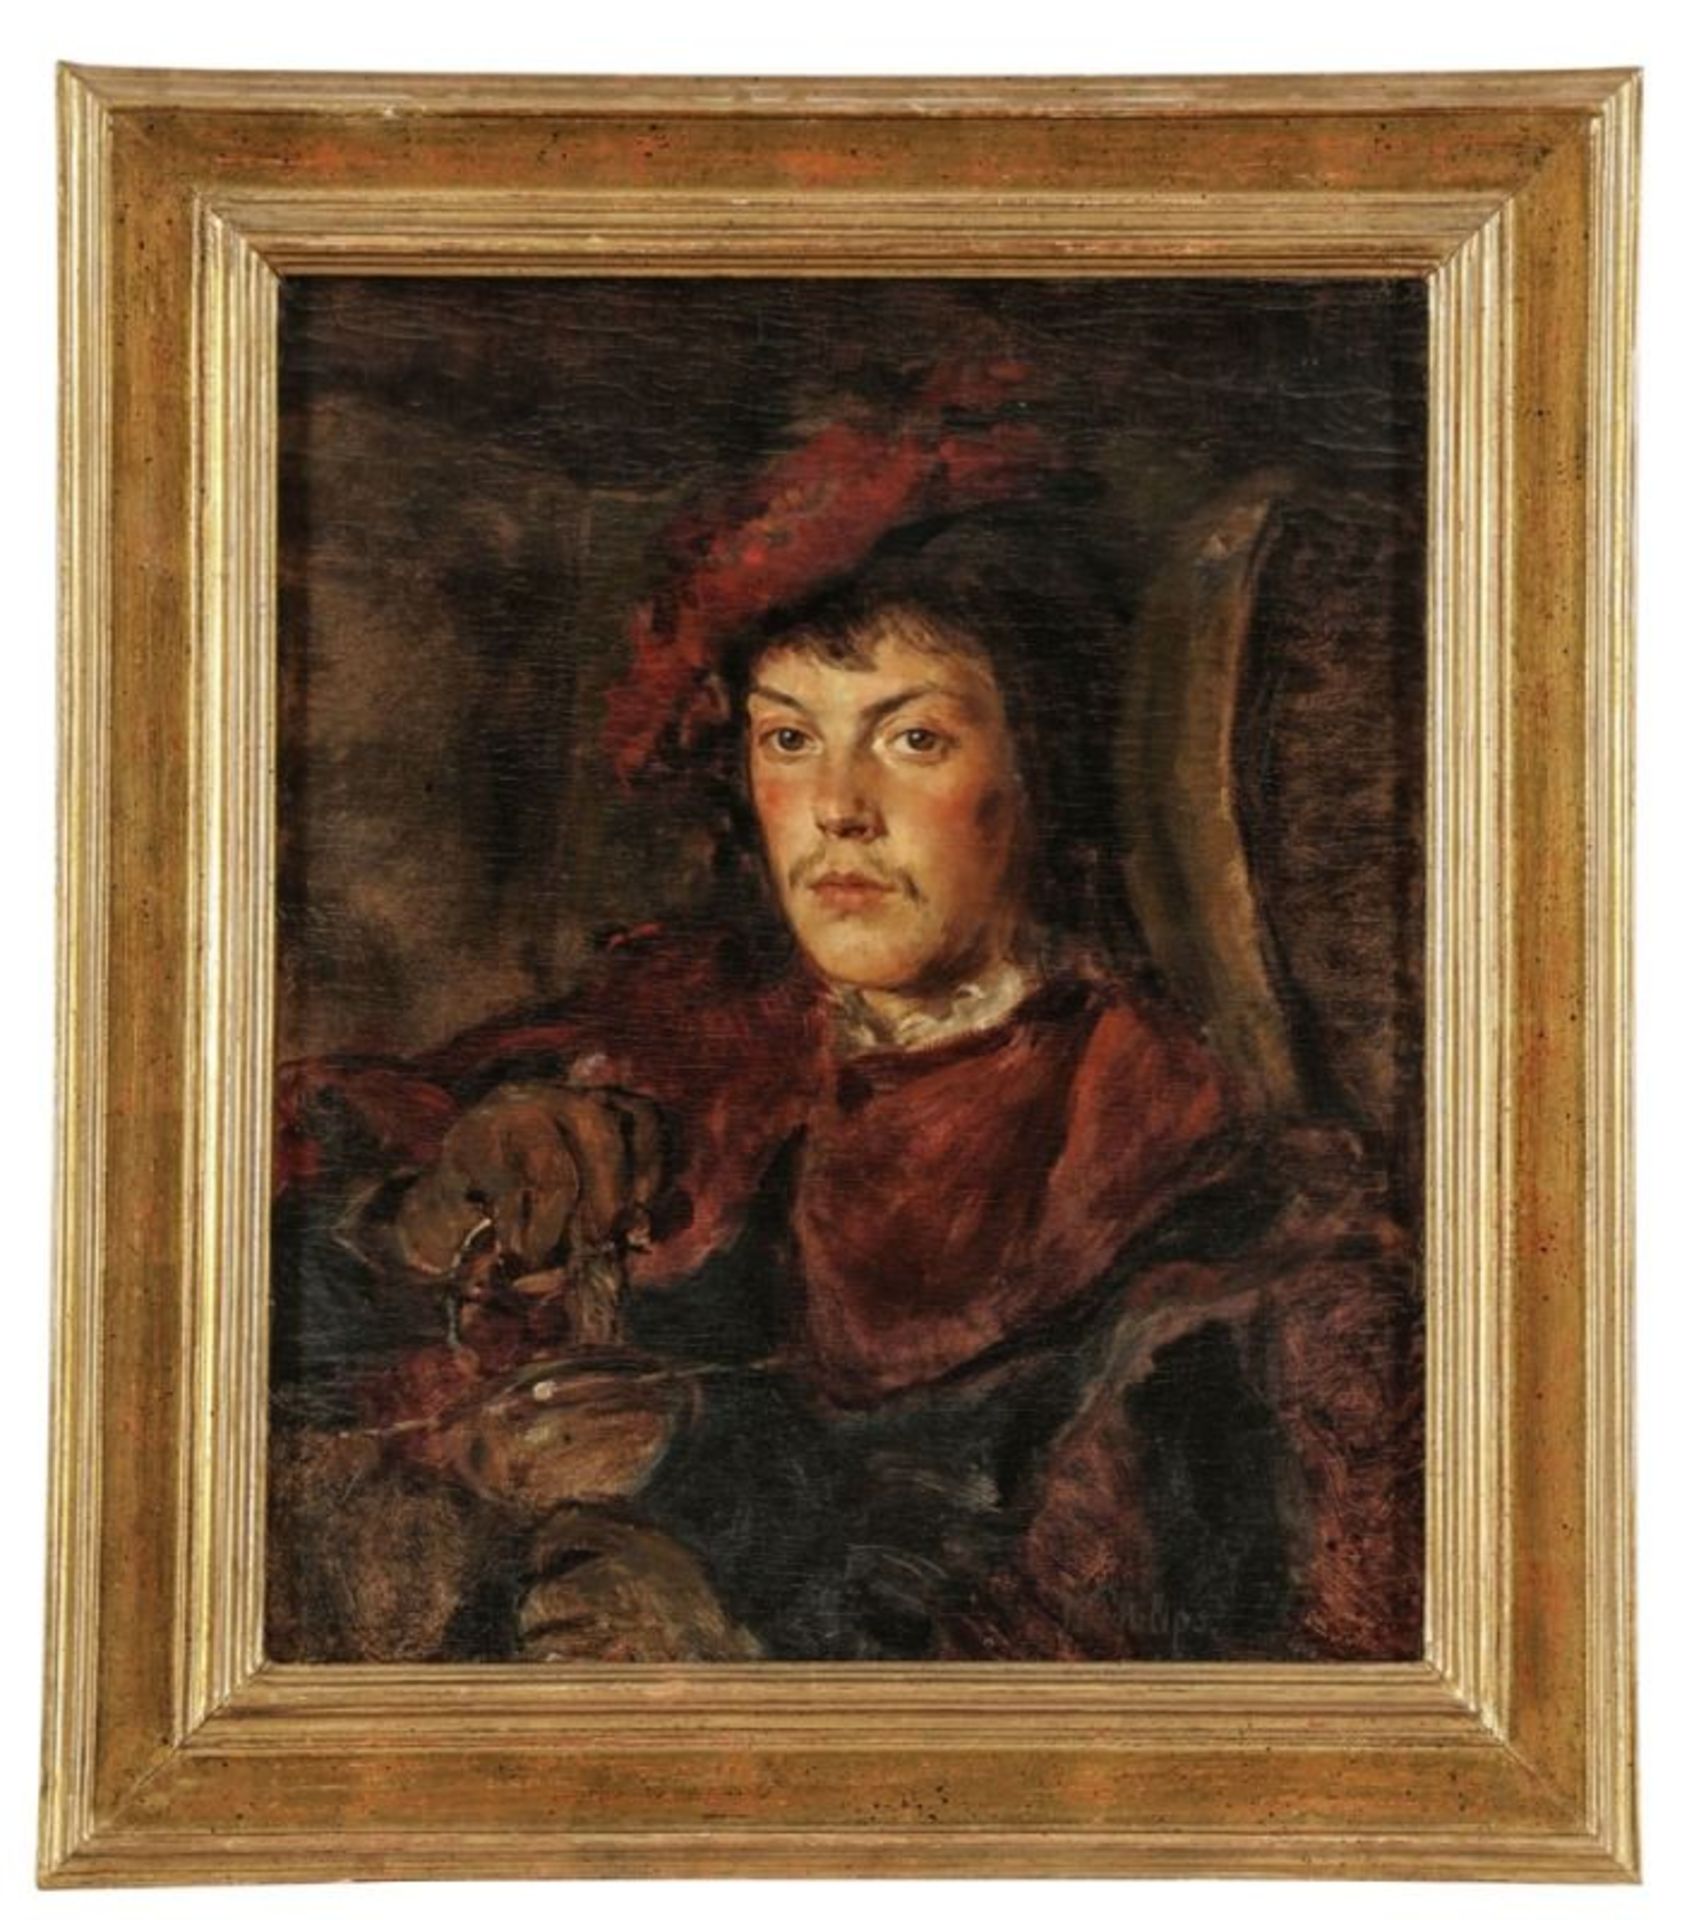 Hermann August Philips1844 Aachen - 1927 München - Porträt von einem jungen Mann - Öl/Lwd. 56 x 47 - Image 2 of 2